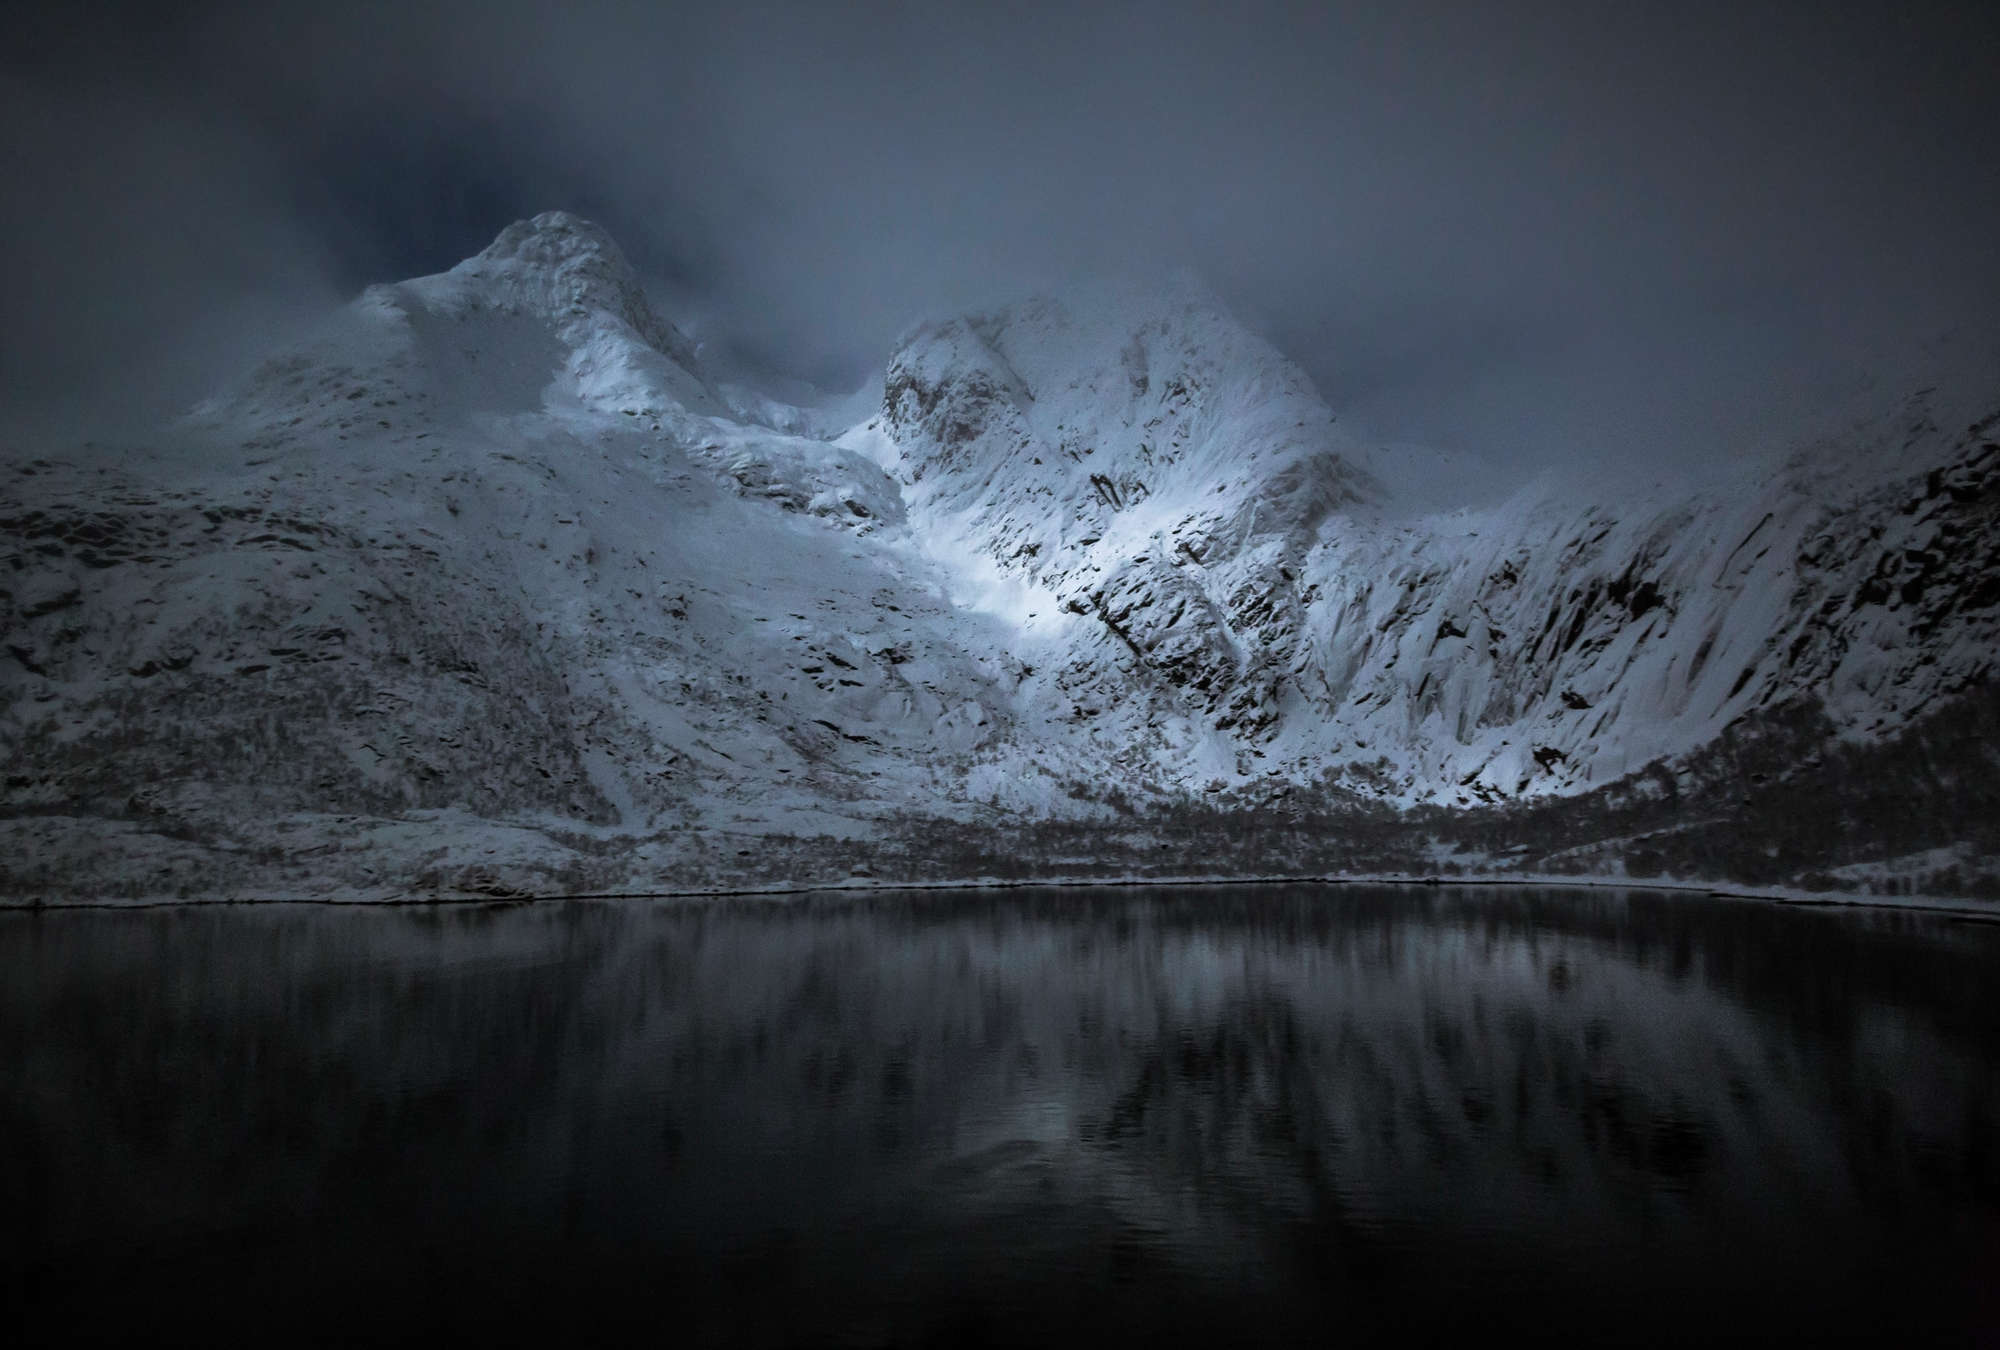             Sfondo Montagne e laghi - Lofoten in Norvegia di notte
        